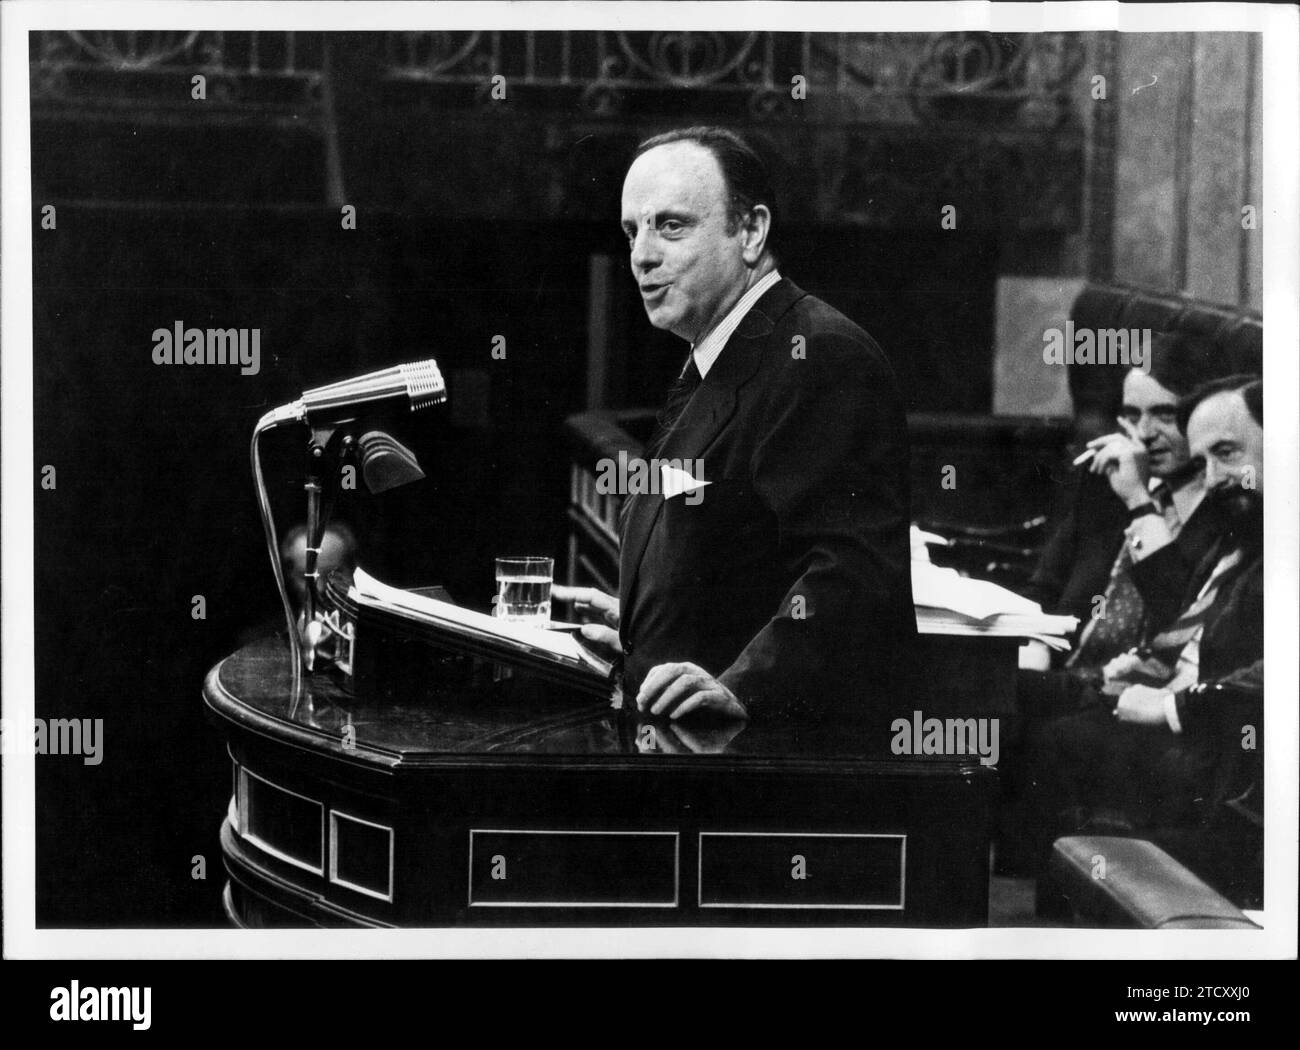 07/06/1978. Manuel Fraga Iribarne in un discorso al Congresso sull'articolo 15 della Costituzione. Crediti: Album / Archivo ABC / Manuel Sanz Bermejo Foto Stock